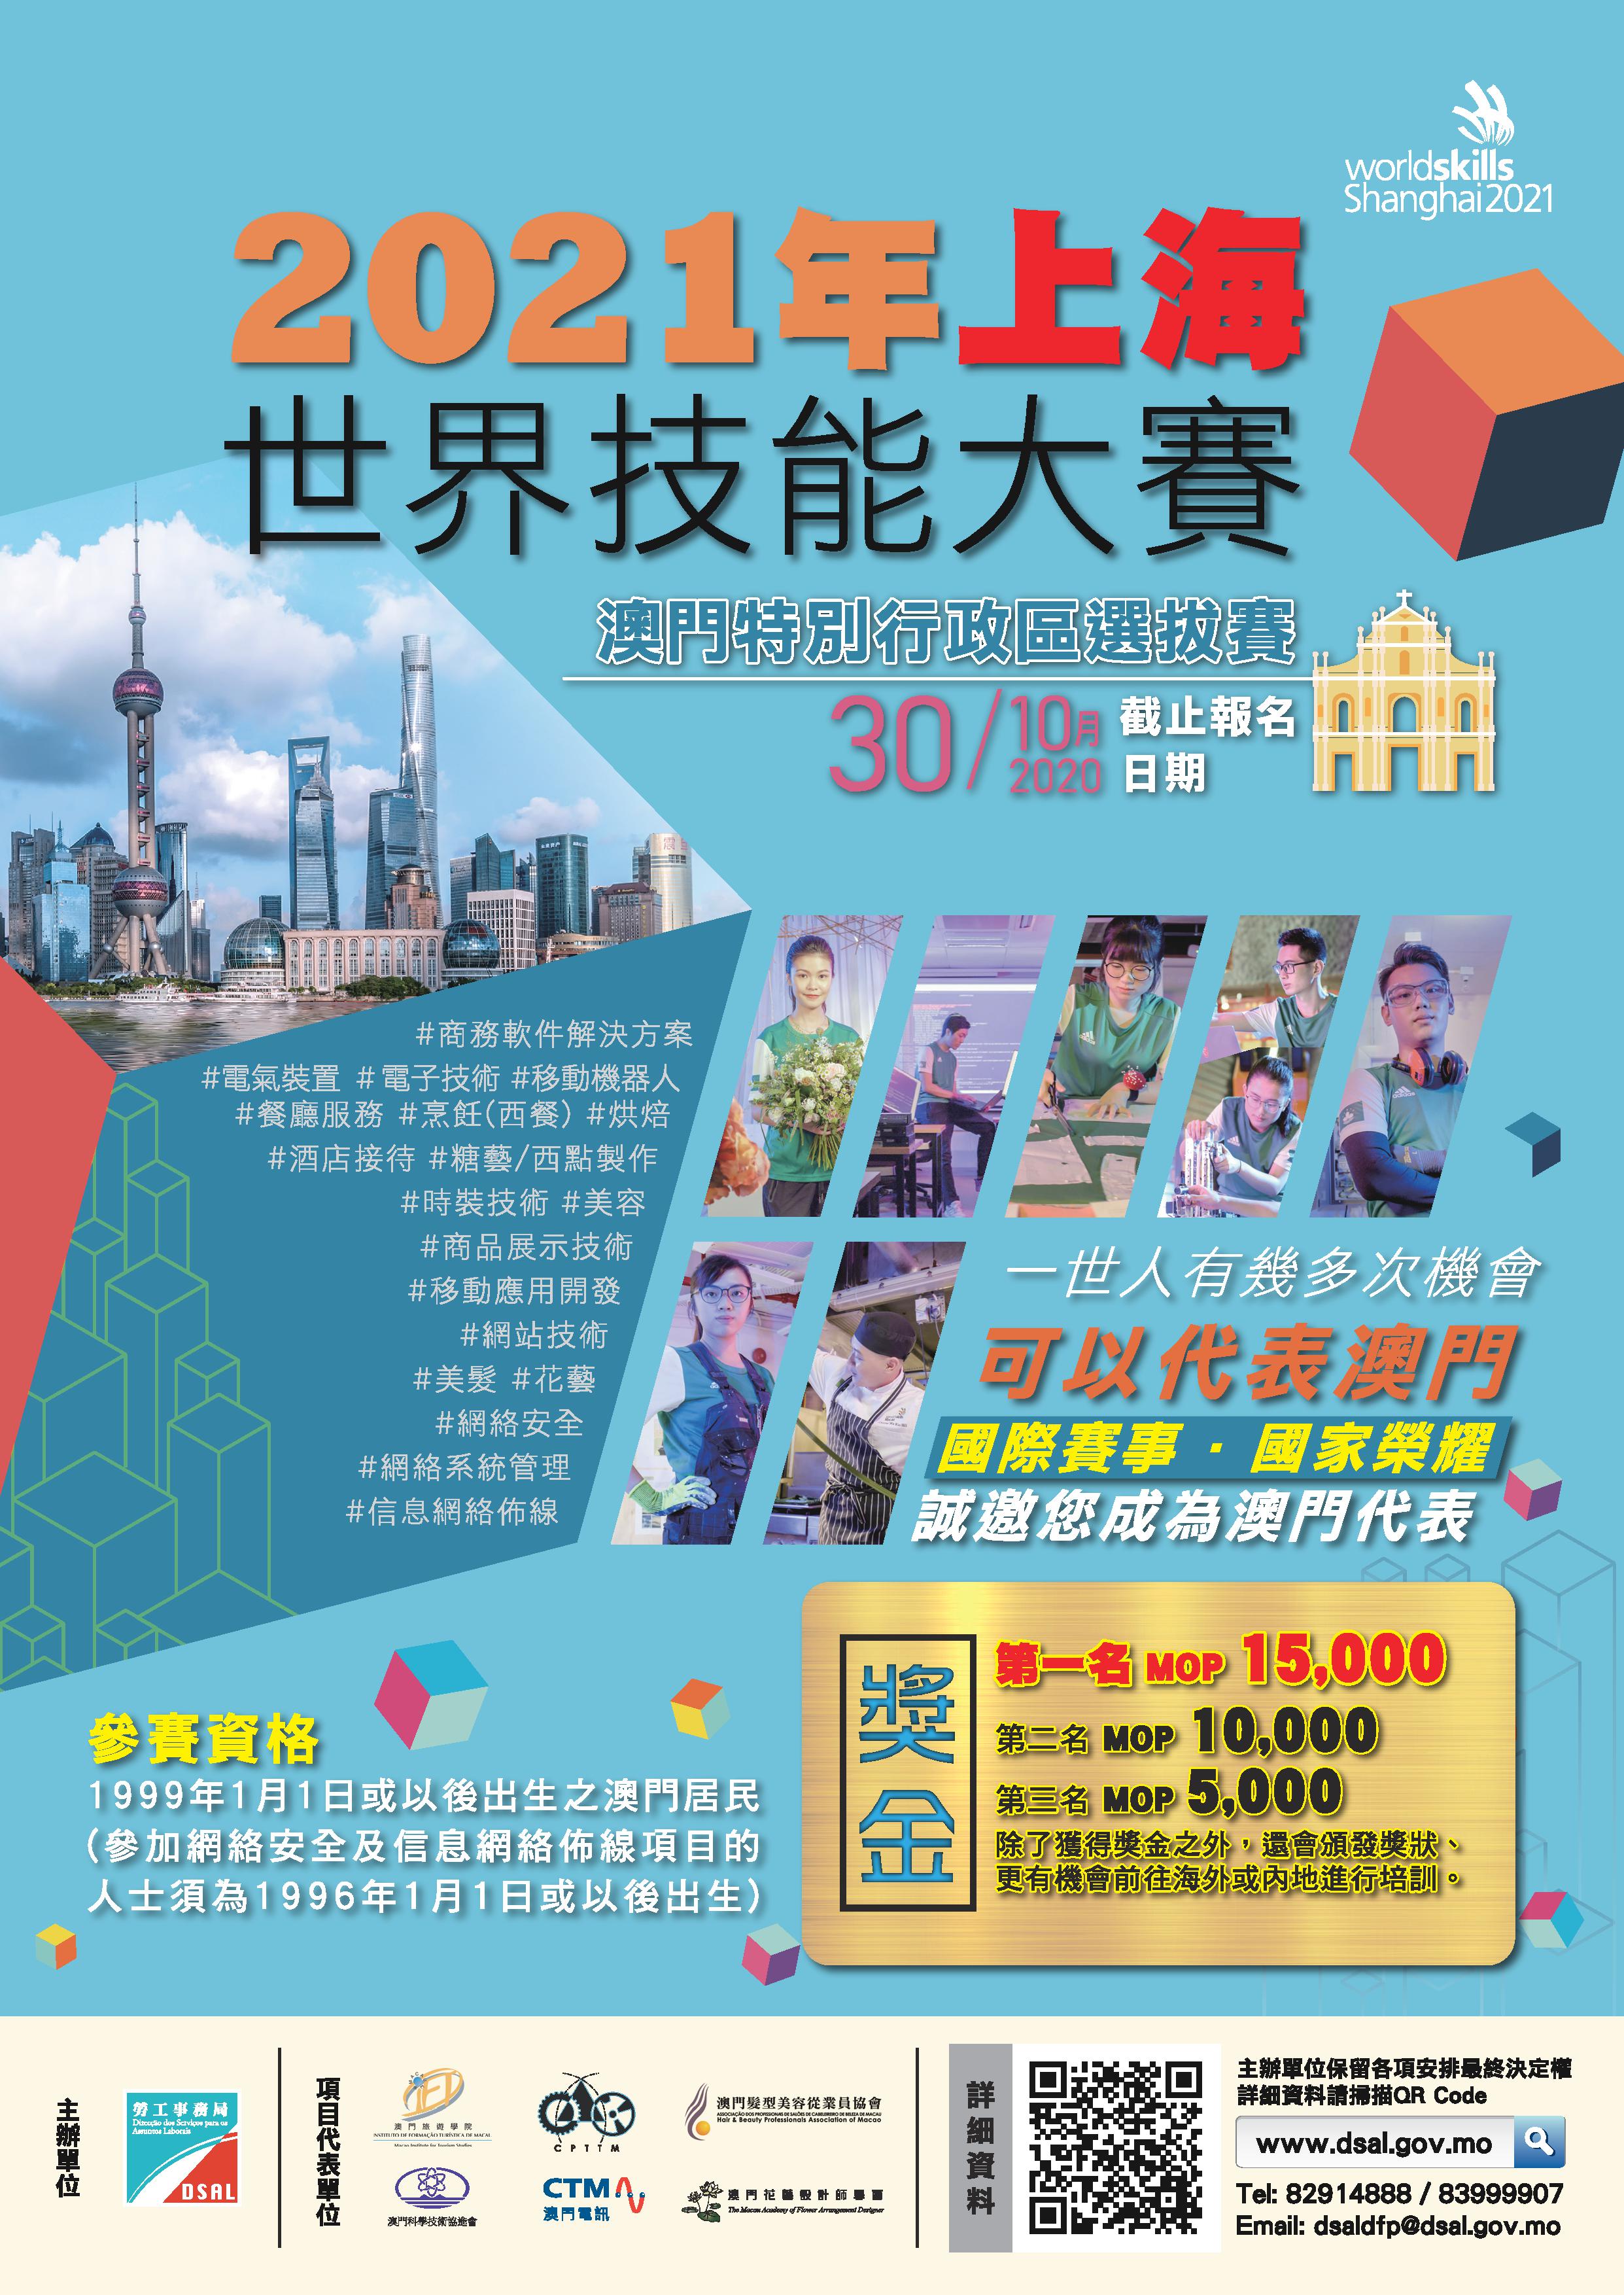 2021年上海世界技能大賽 海報